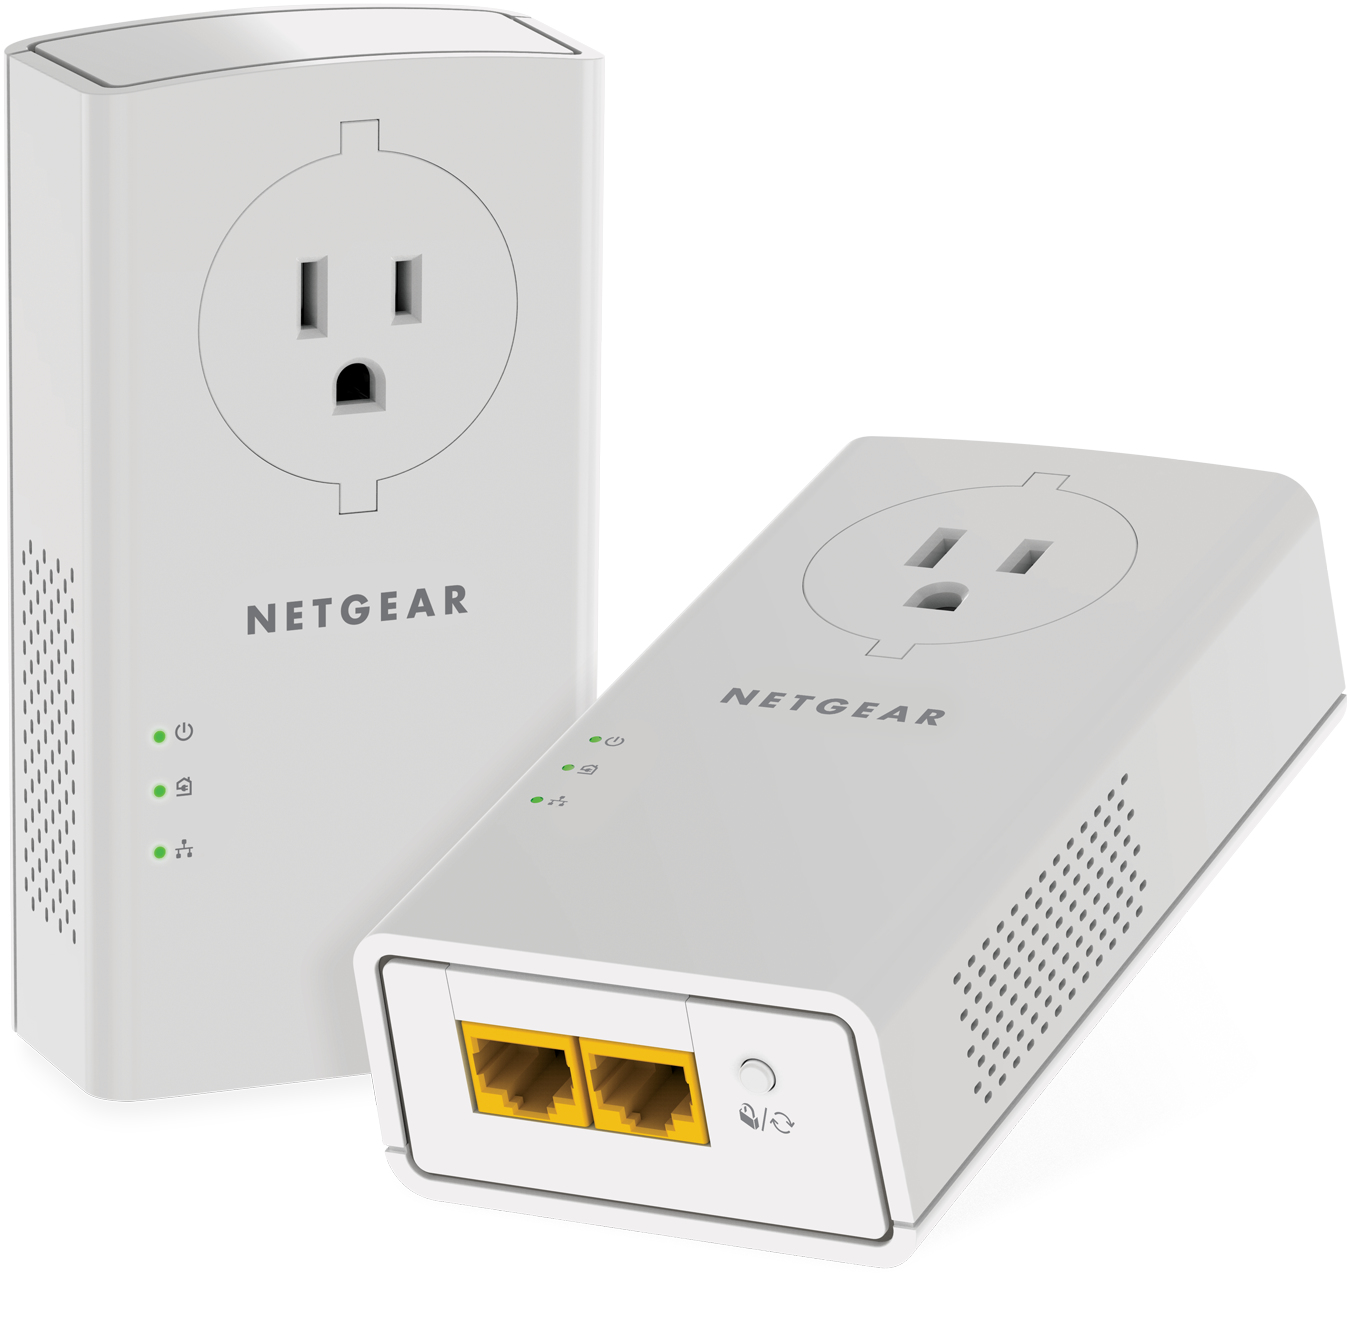 NETGEAR Powerline 2000 + Extra Outlet - Powerline adapter - GigE, HomePlug AV (HPAV) 2.0 - wall-pluggable (pack of 2)